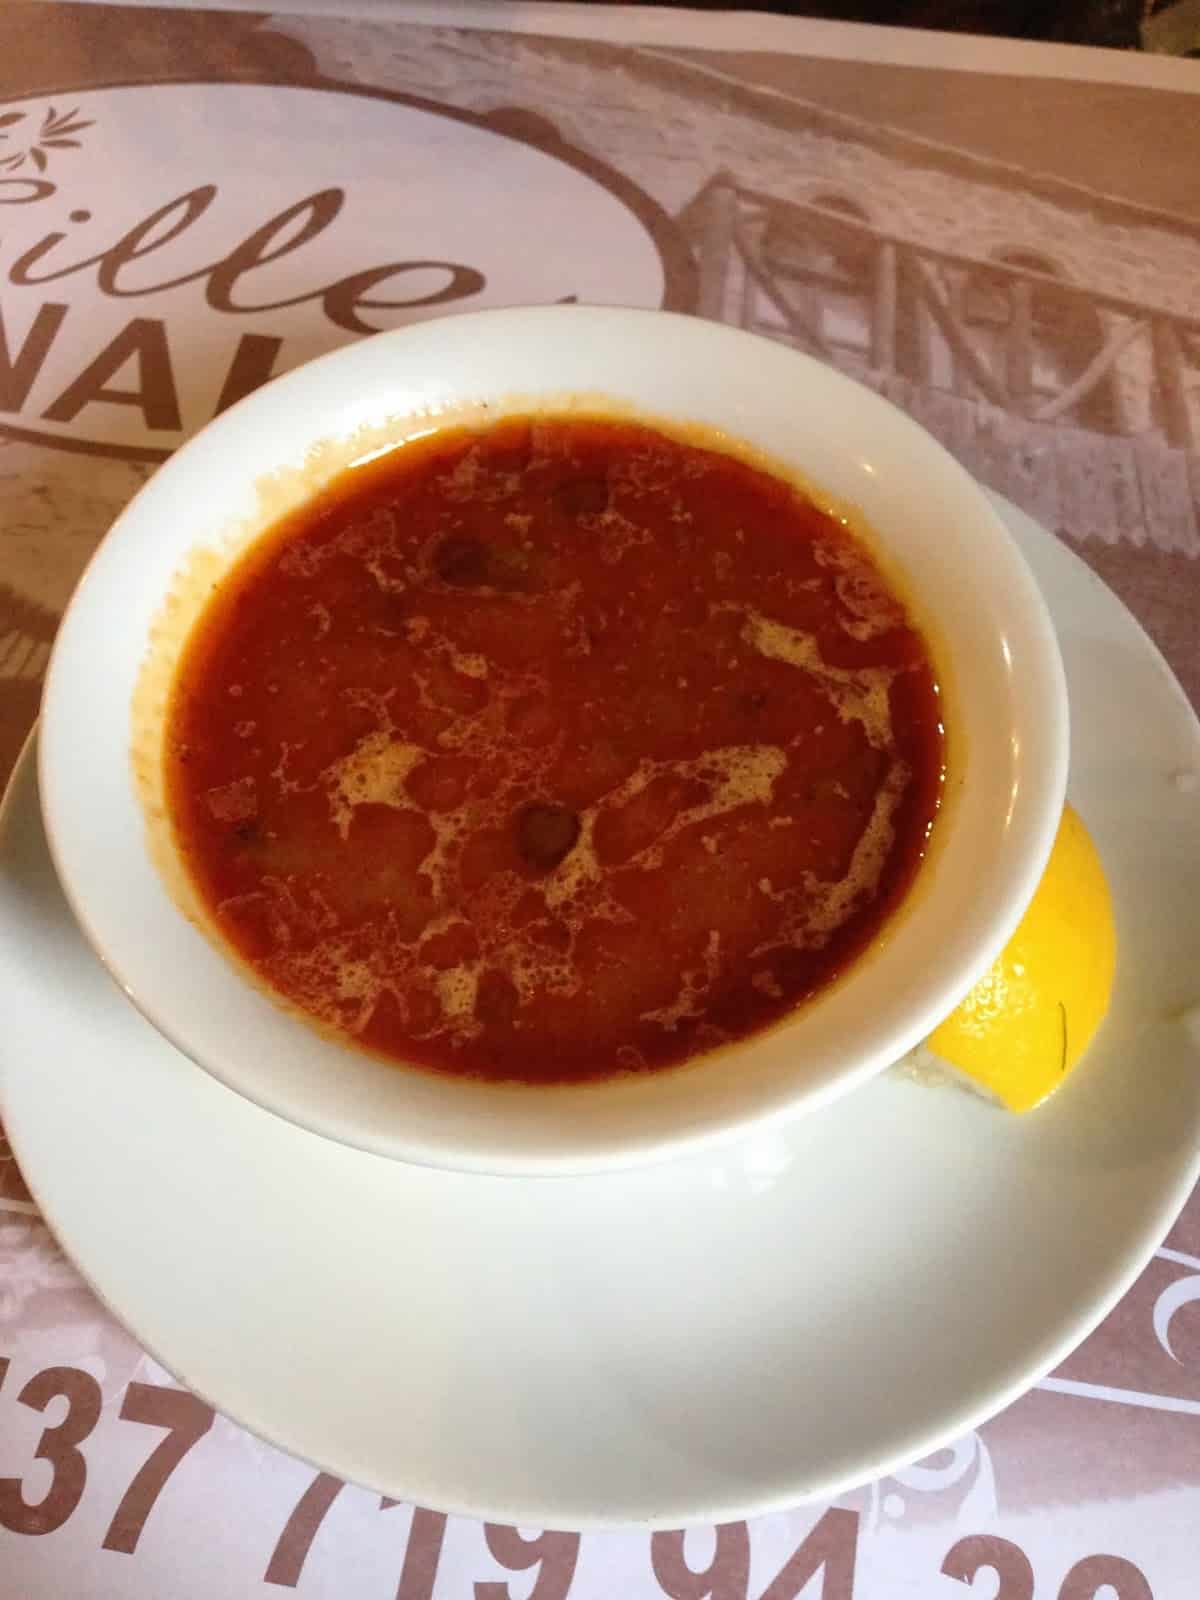 Okra soup at Sille Konak in Sille, Turkey